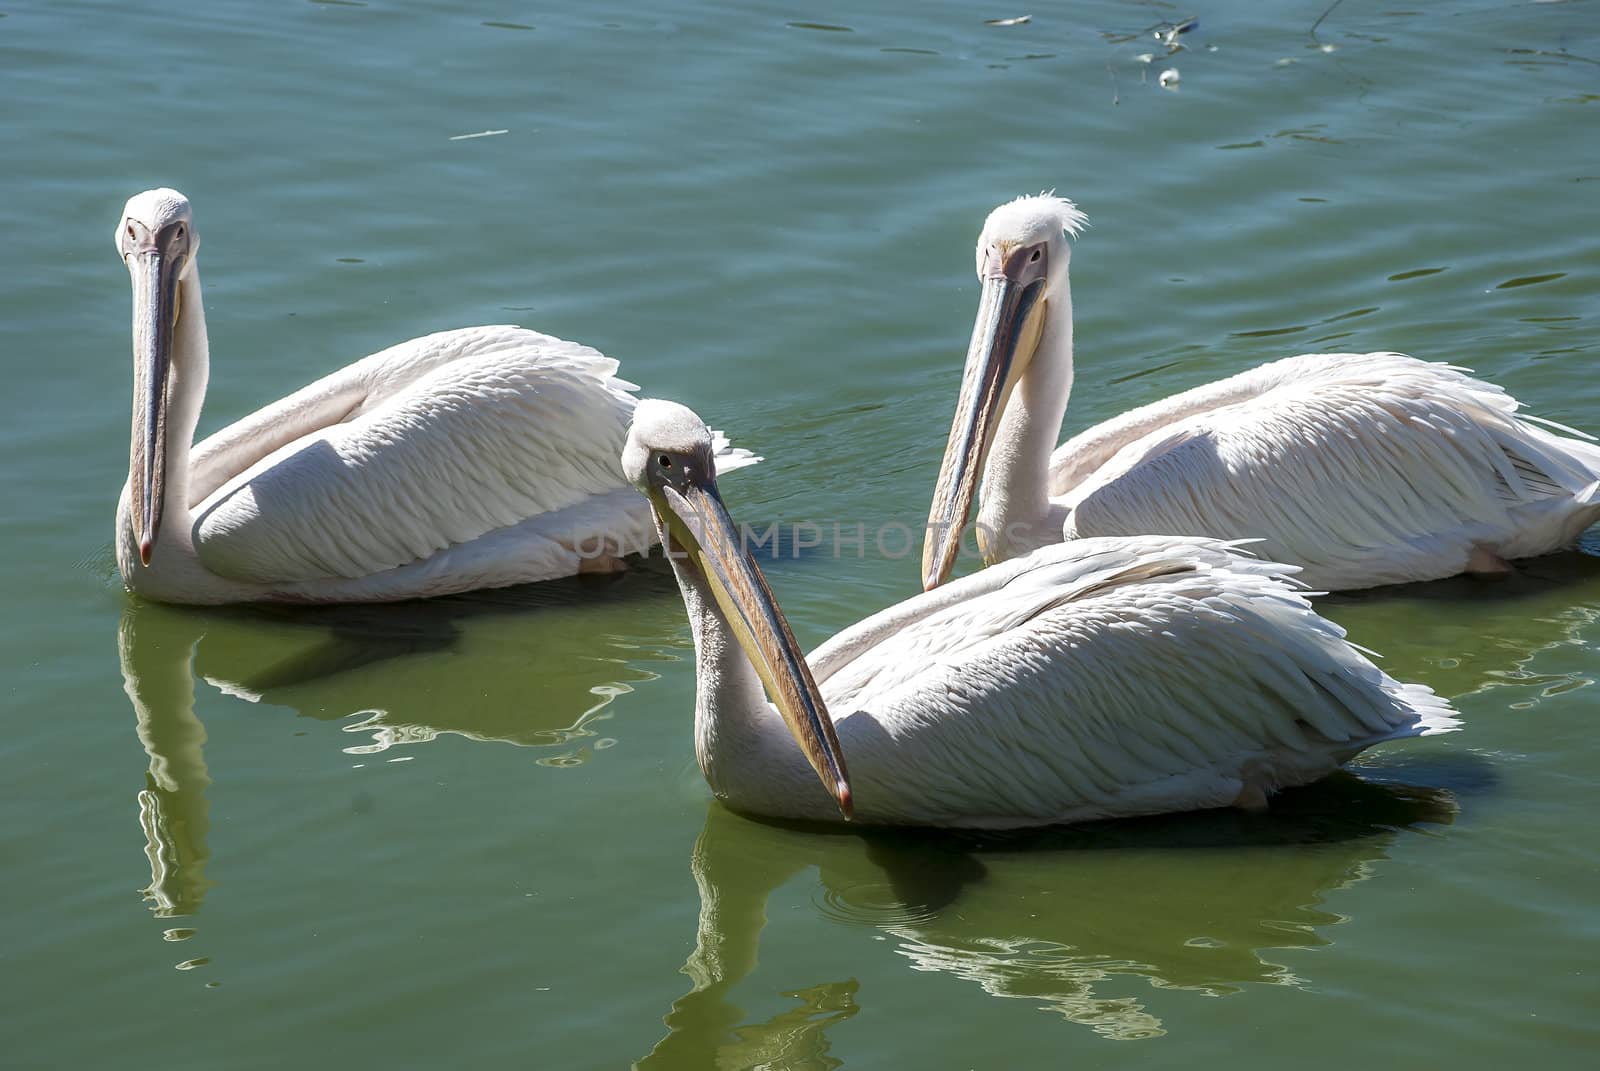 Three pelicans in lake waters by varbenov